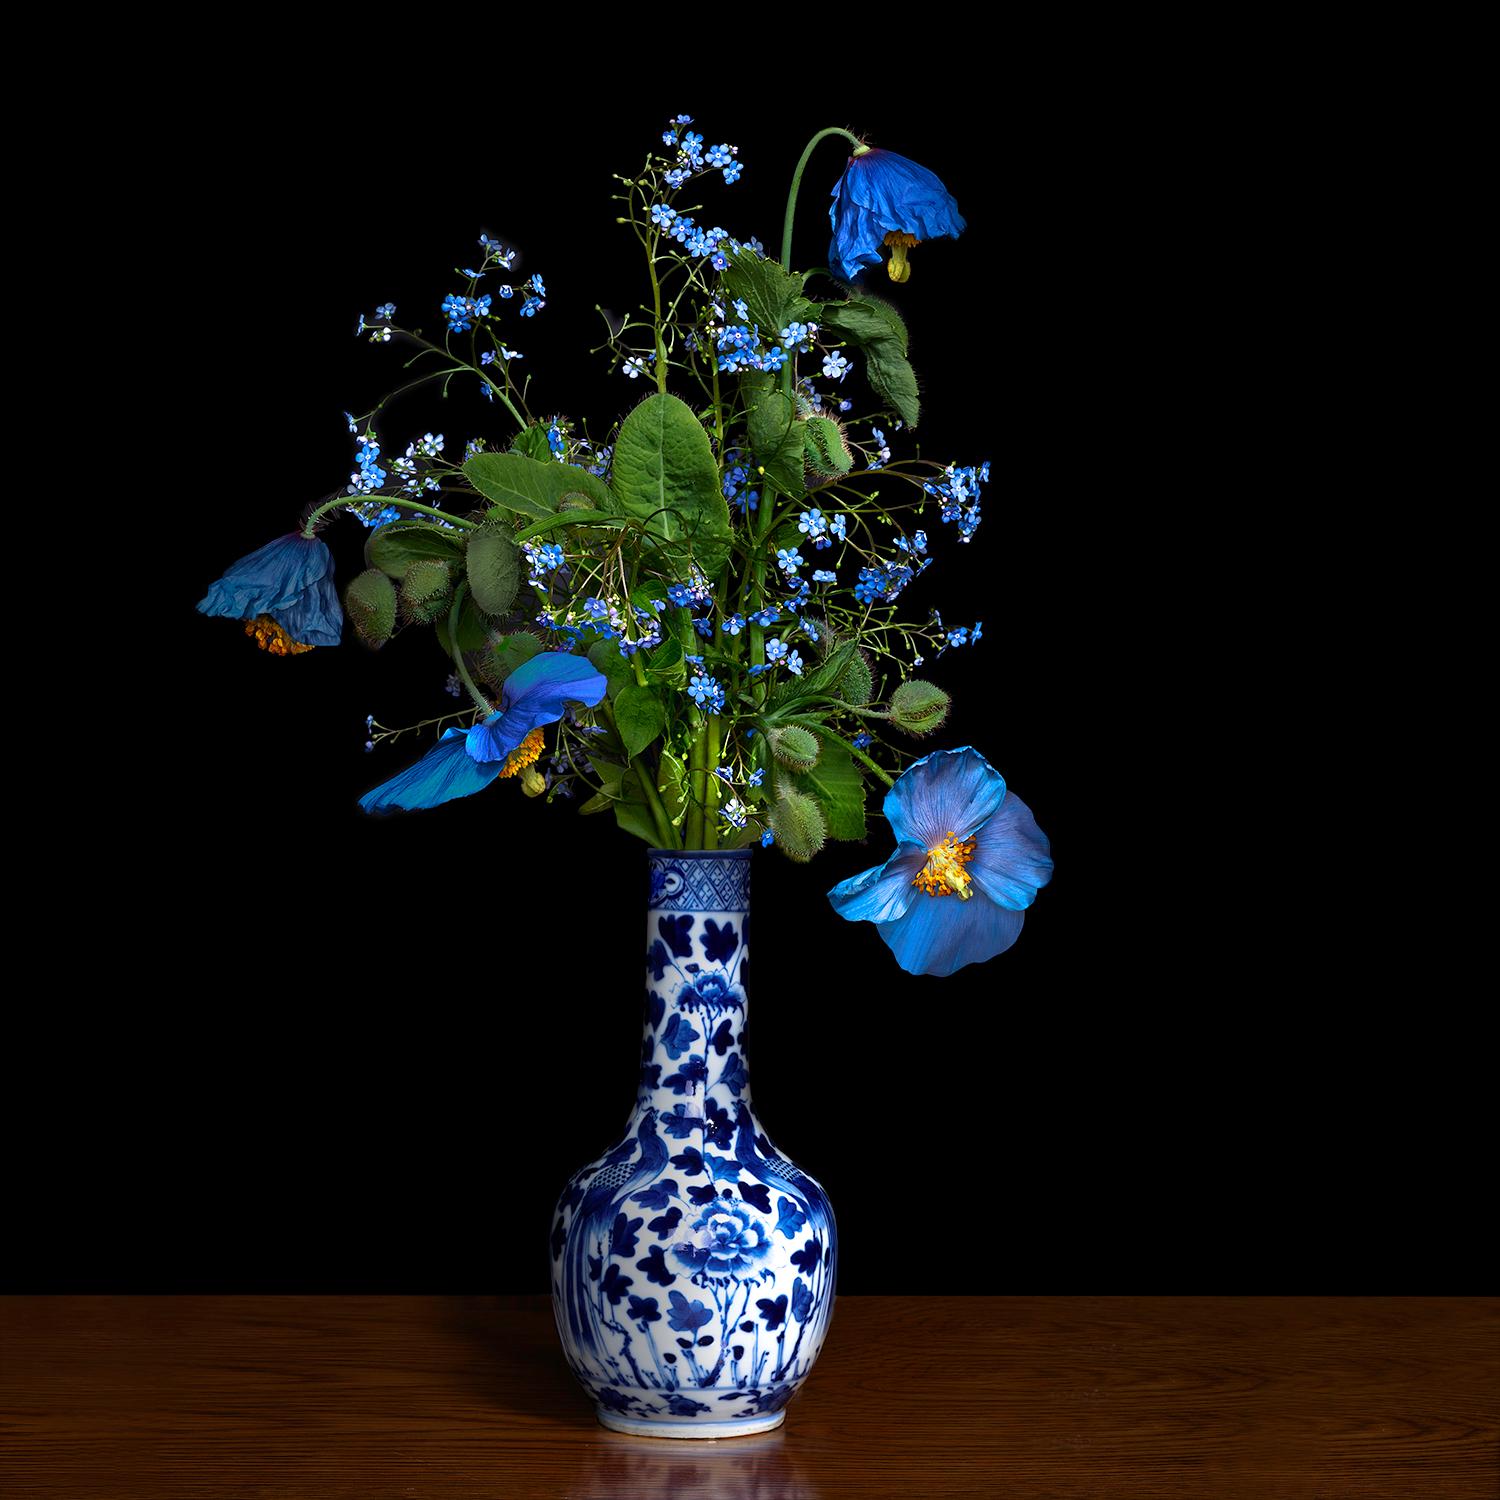 Still-Life Photograph T.M. Glass - Coquelicot bleu dans un vase chinois bleu et blanc